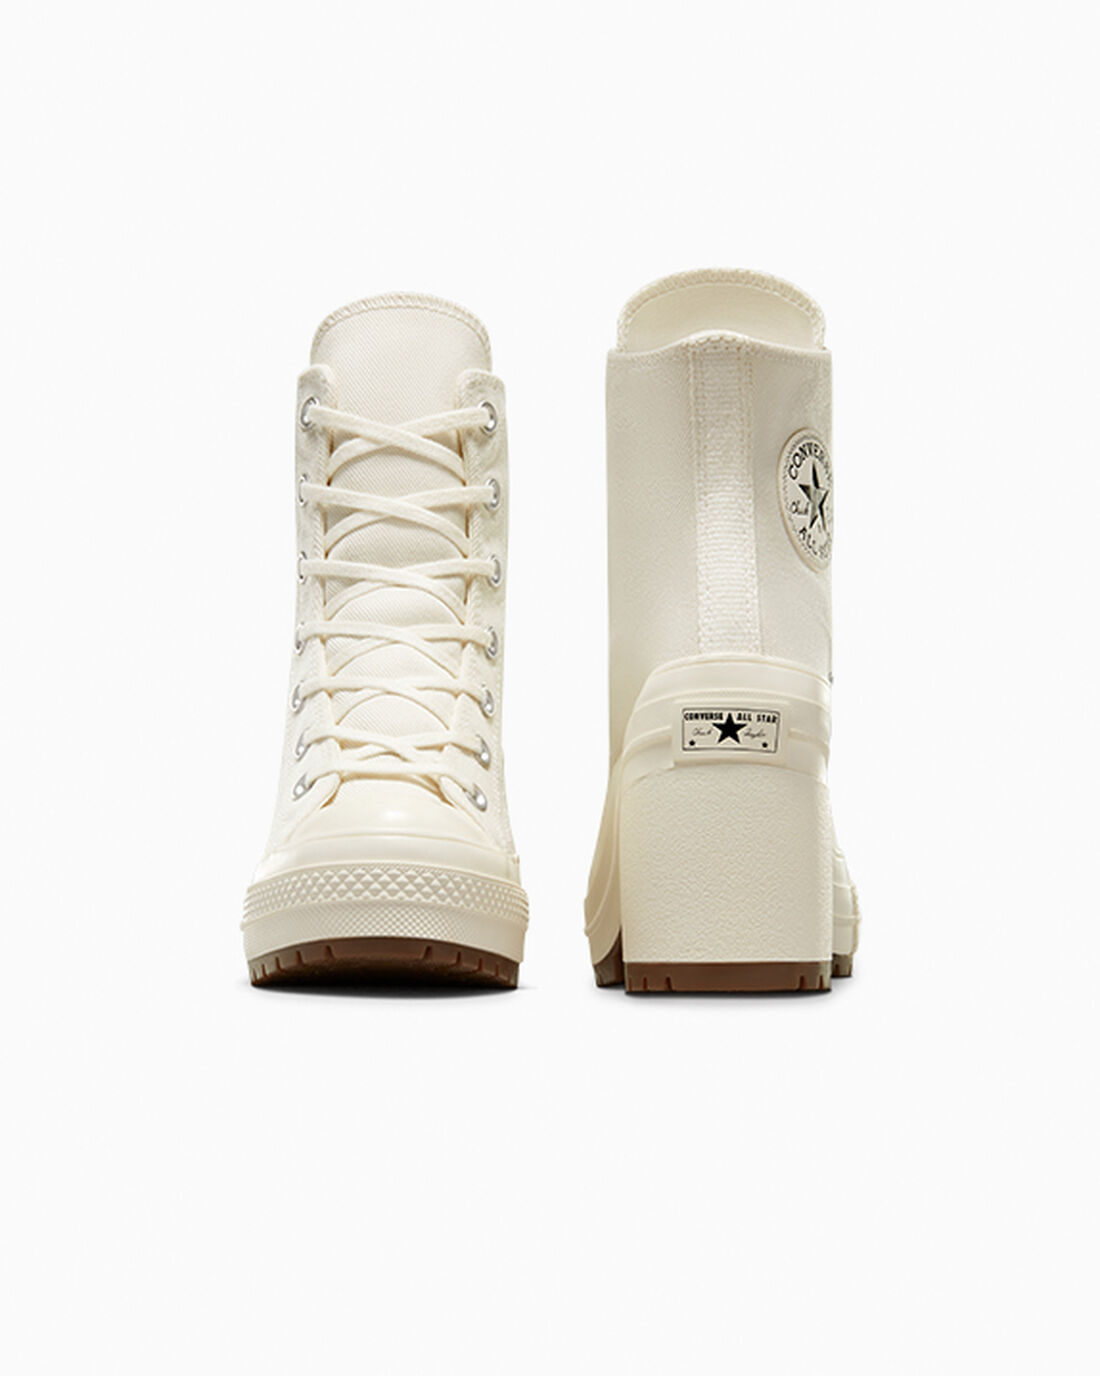 Women's Converse Chuck 70 De Luxe Heel High Top Sneakers Beige/Black | Australia-81903